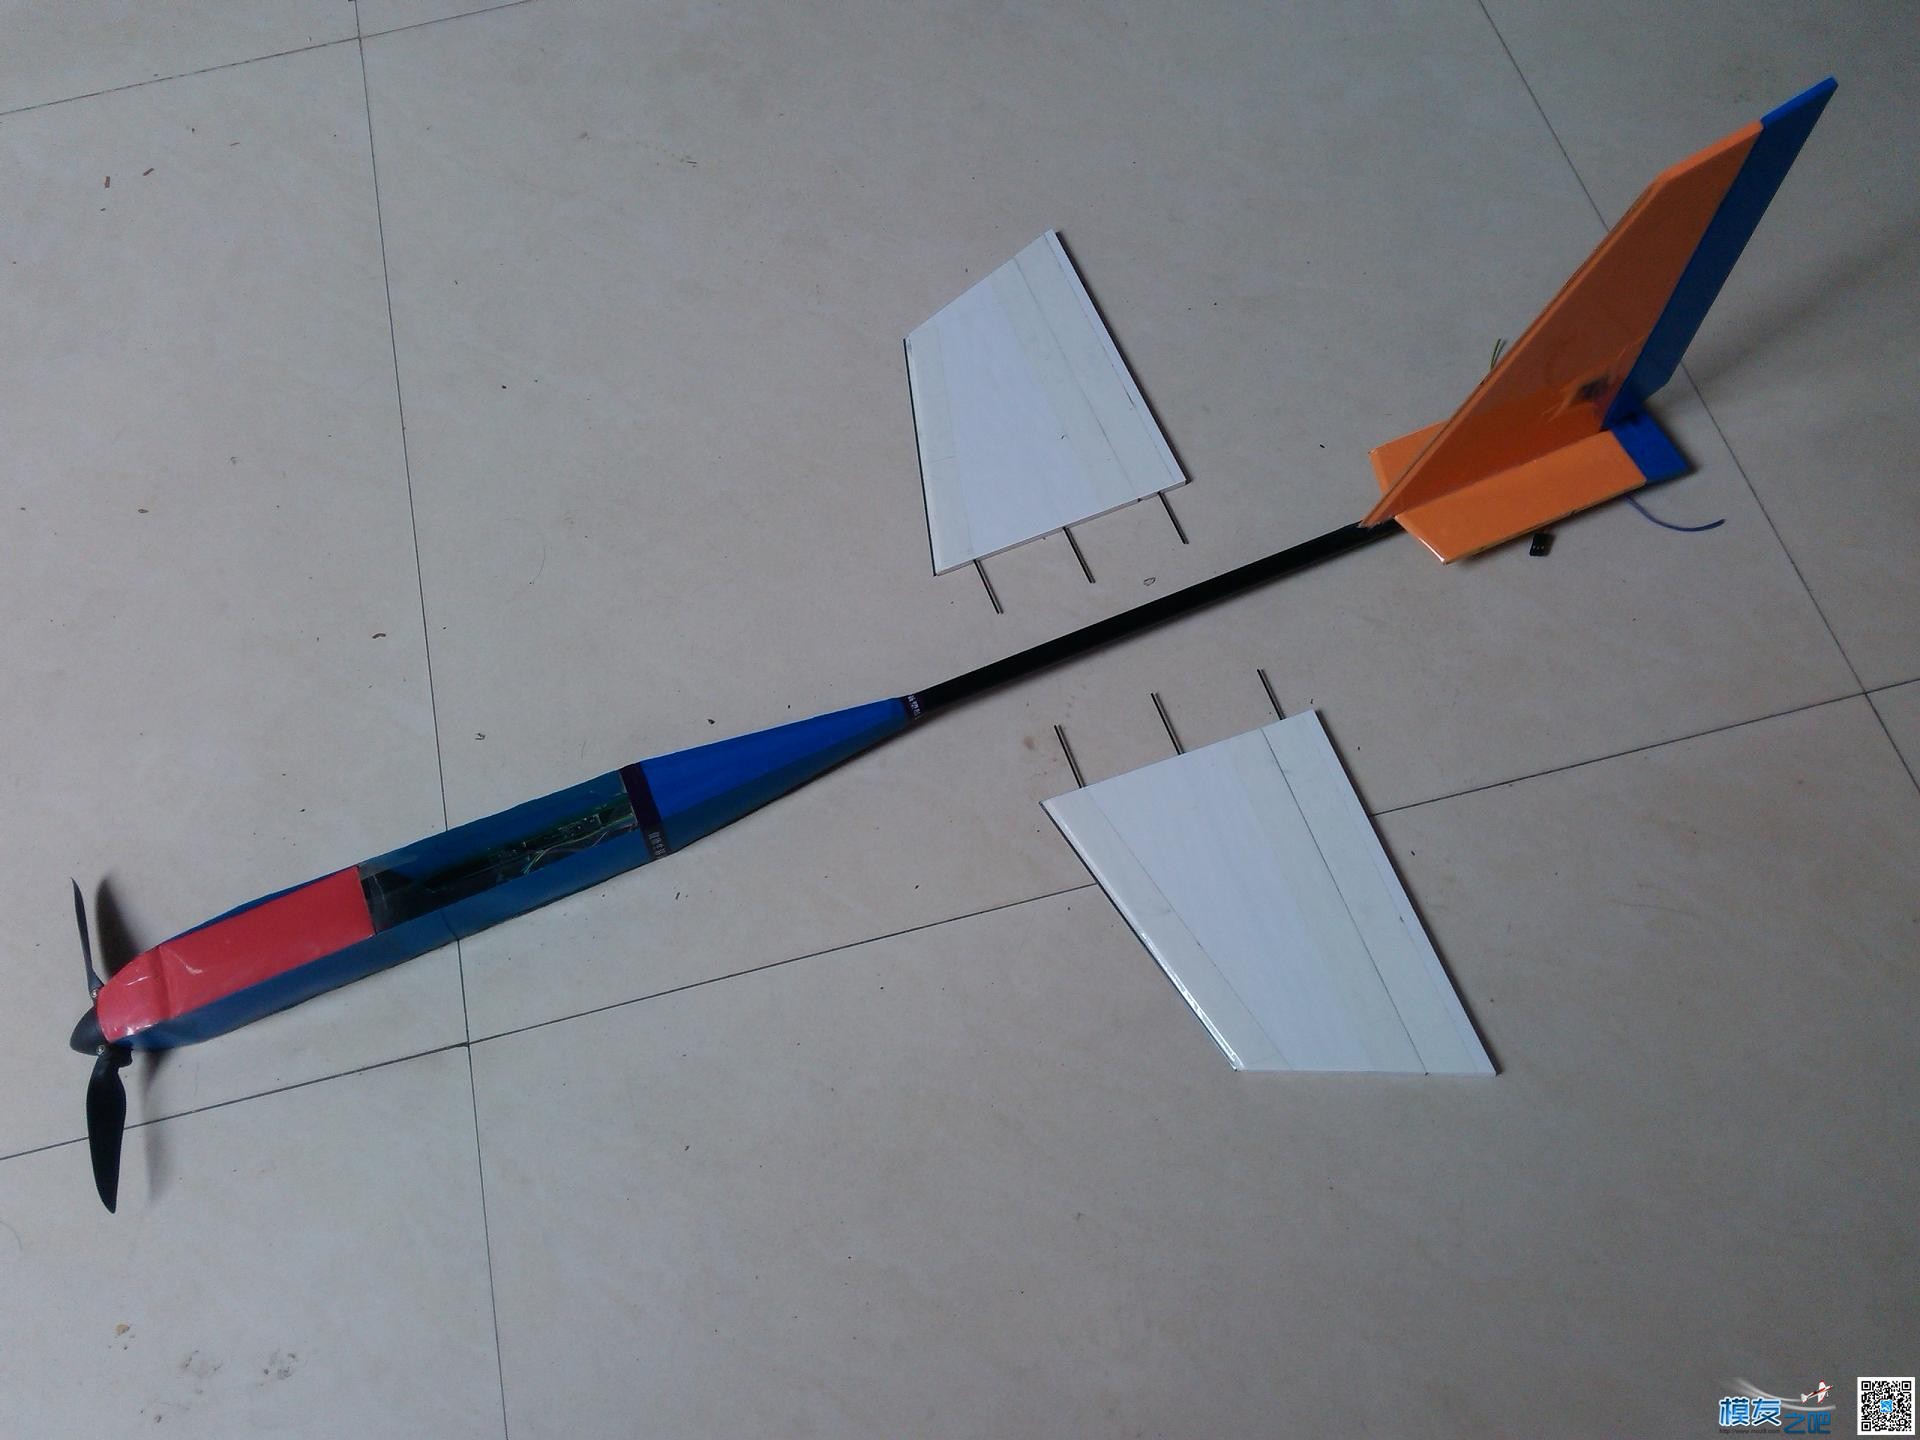 用瓶子折纸法制作滑翔机机头机身。已完成。老鸟别笑。.... 碳纤维,滑翔机,制作,专业 作者:cyb2688 462 